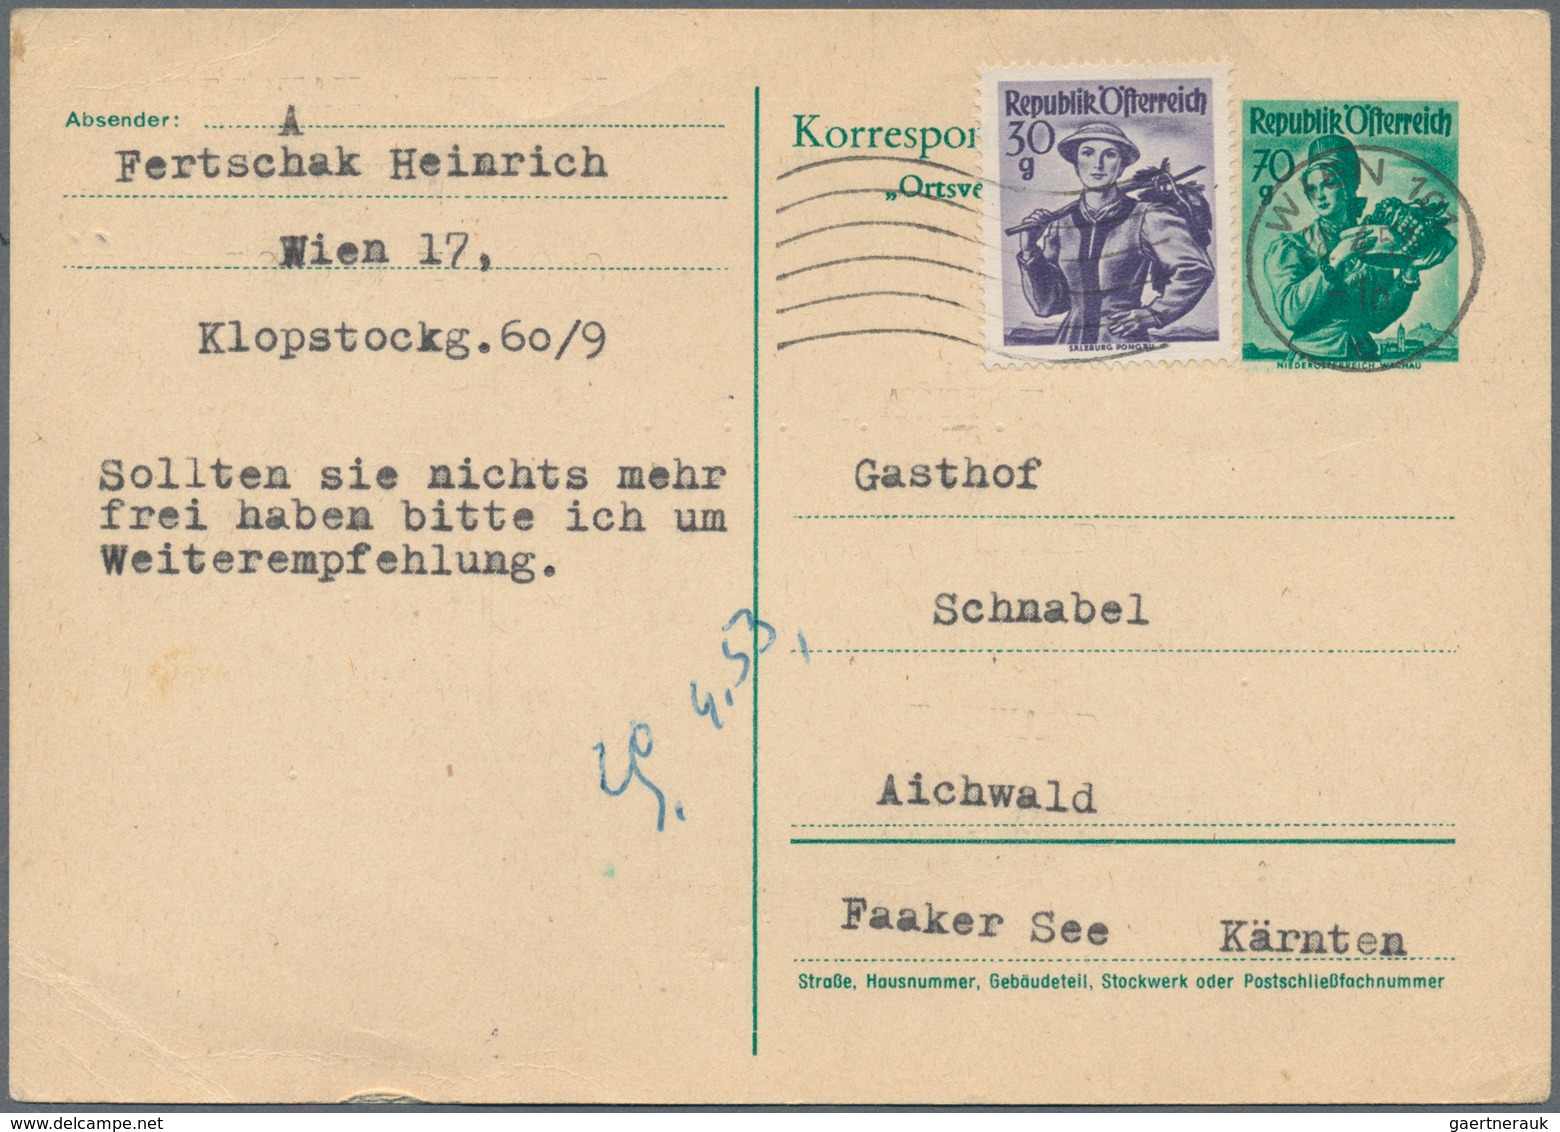 Österreich - Ganzsachen: 1880/2010 (ca.), reichhaltiger Sammlungsbestand von einigen hundert Ganzsac